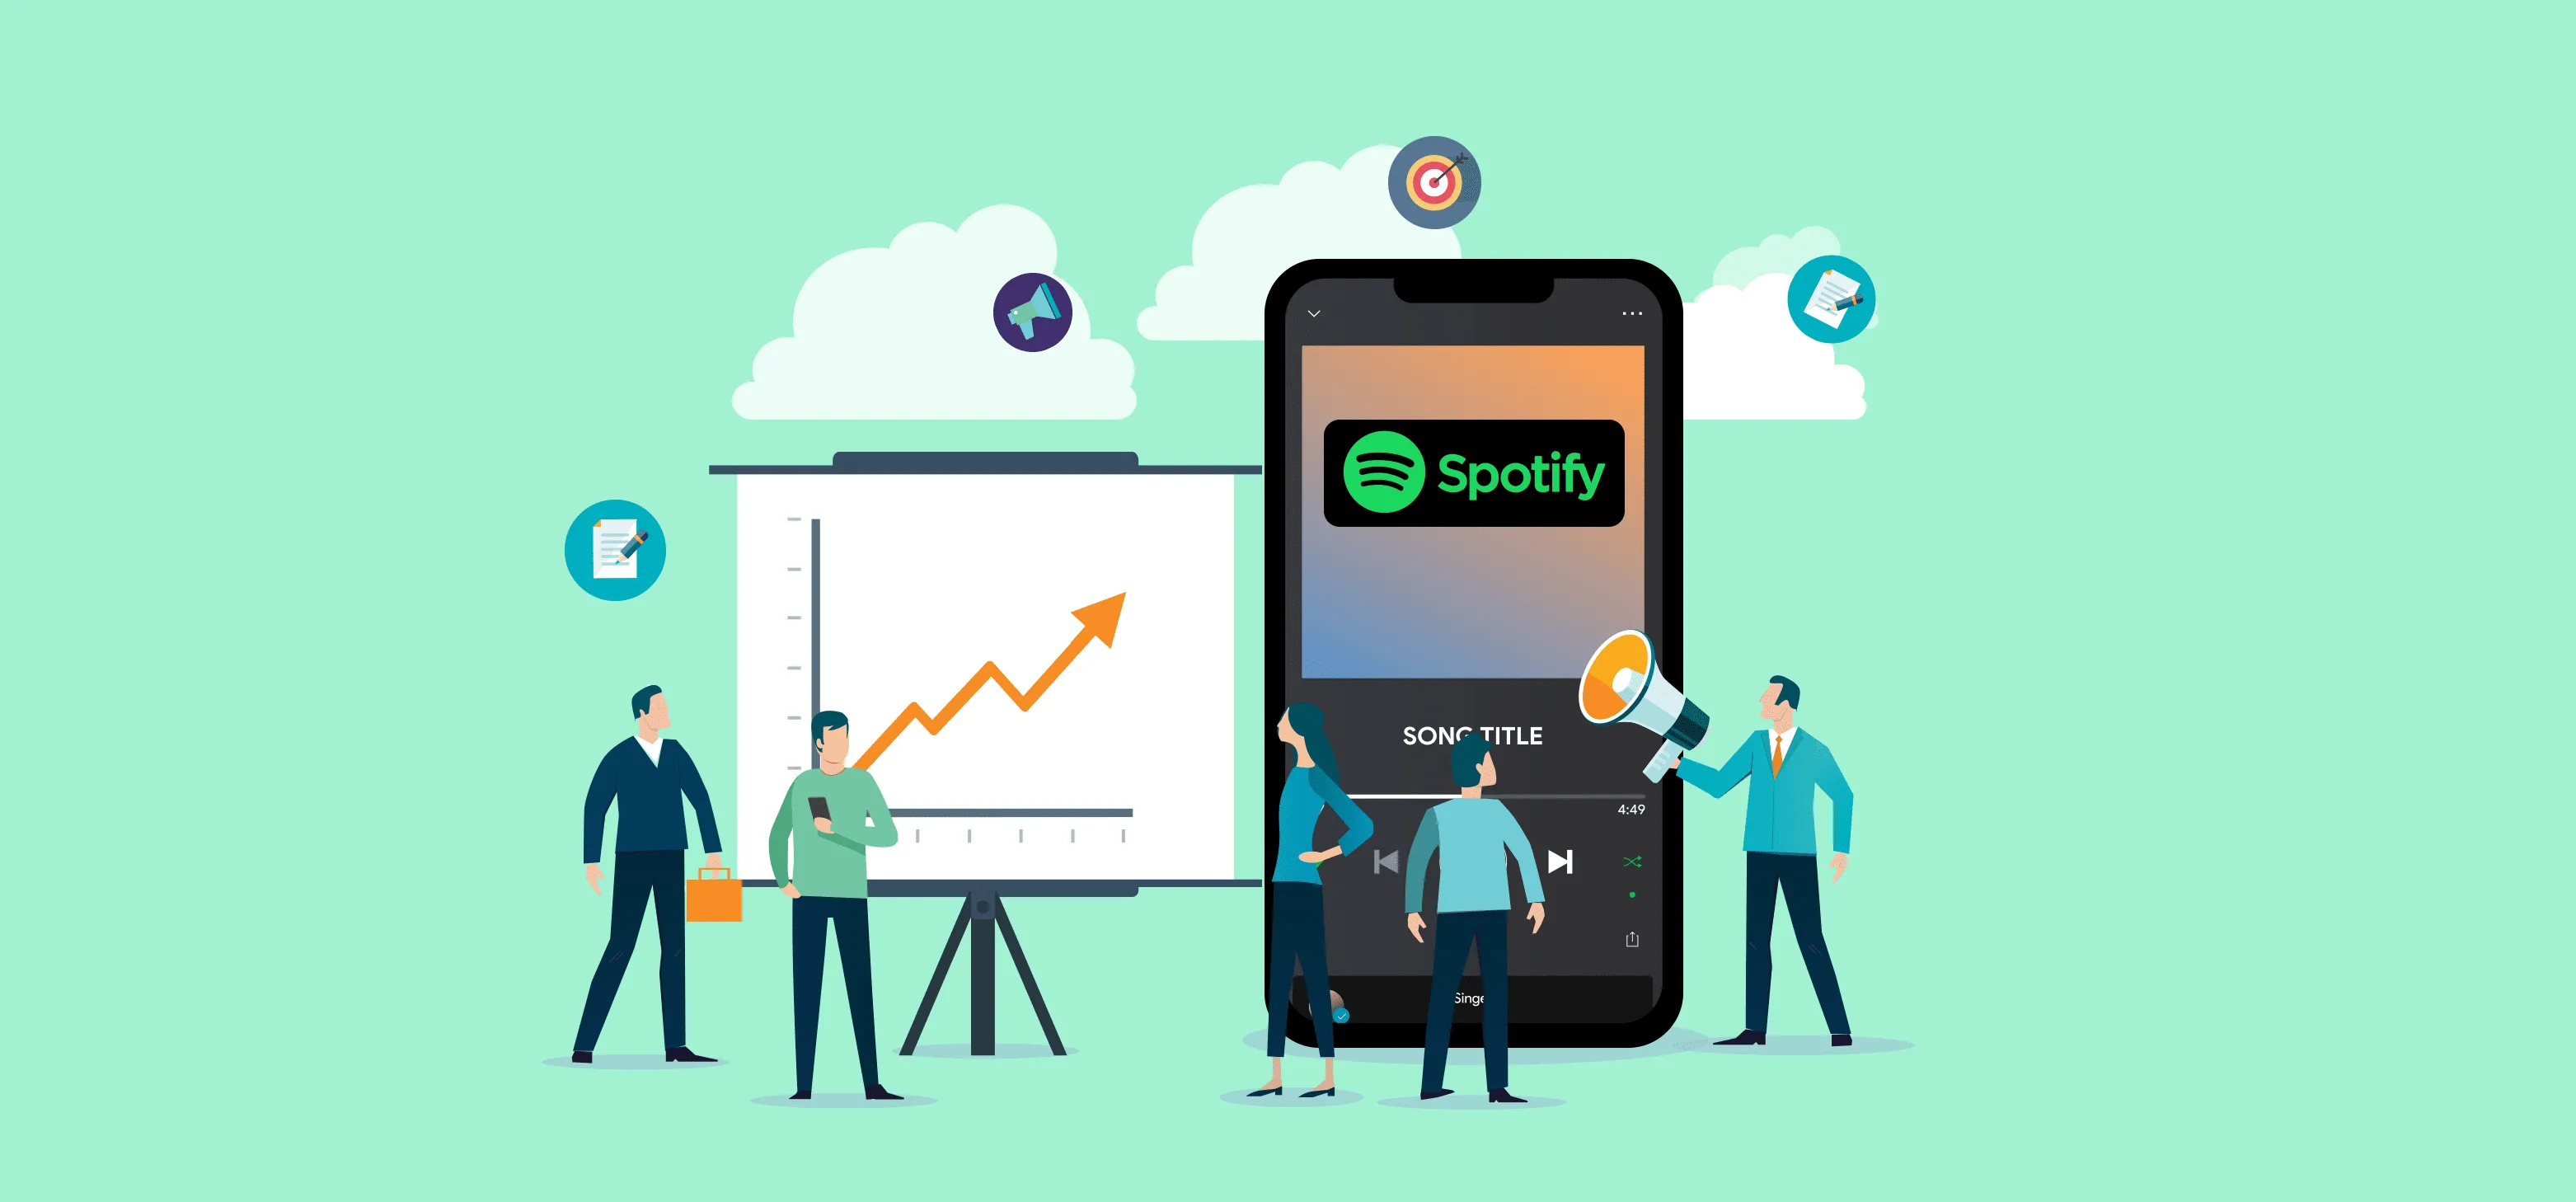 ID Spotify Marketing Startegies